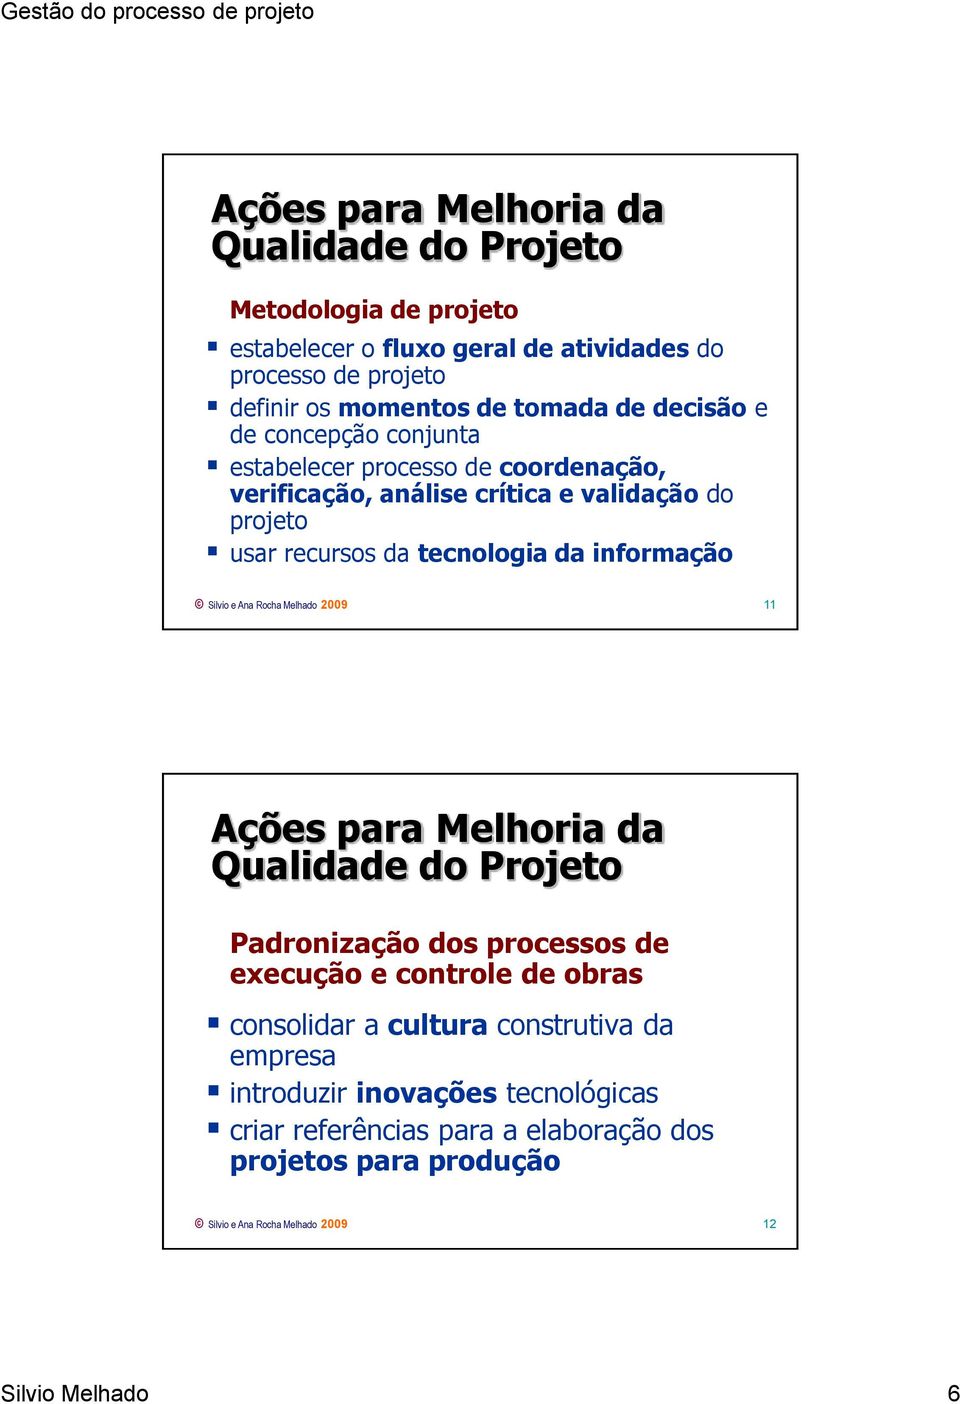 Silvio e Ana Rocha Melhado 2009 11 Ações para Melhoria da Qualidade do Projeto Padronização dos processos de execução e controle de obras consolidar a cultura